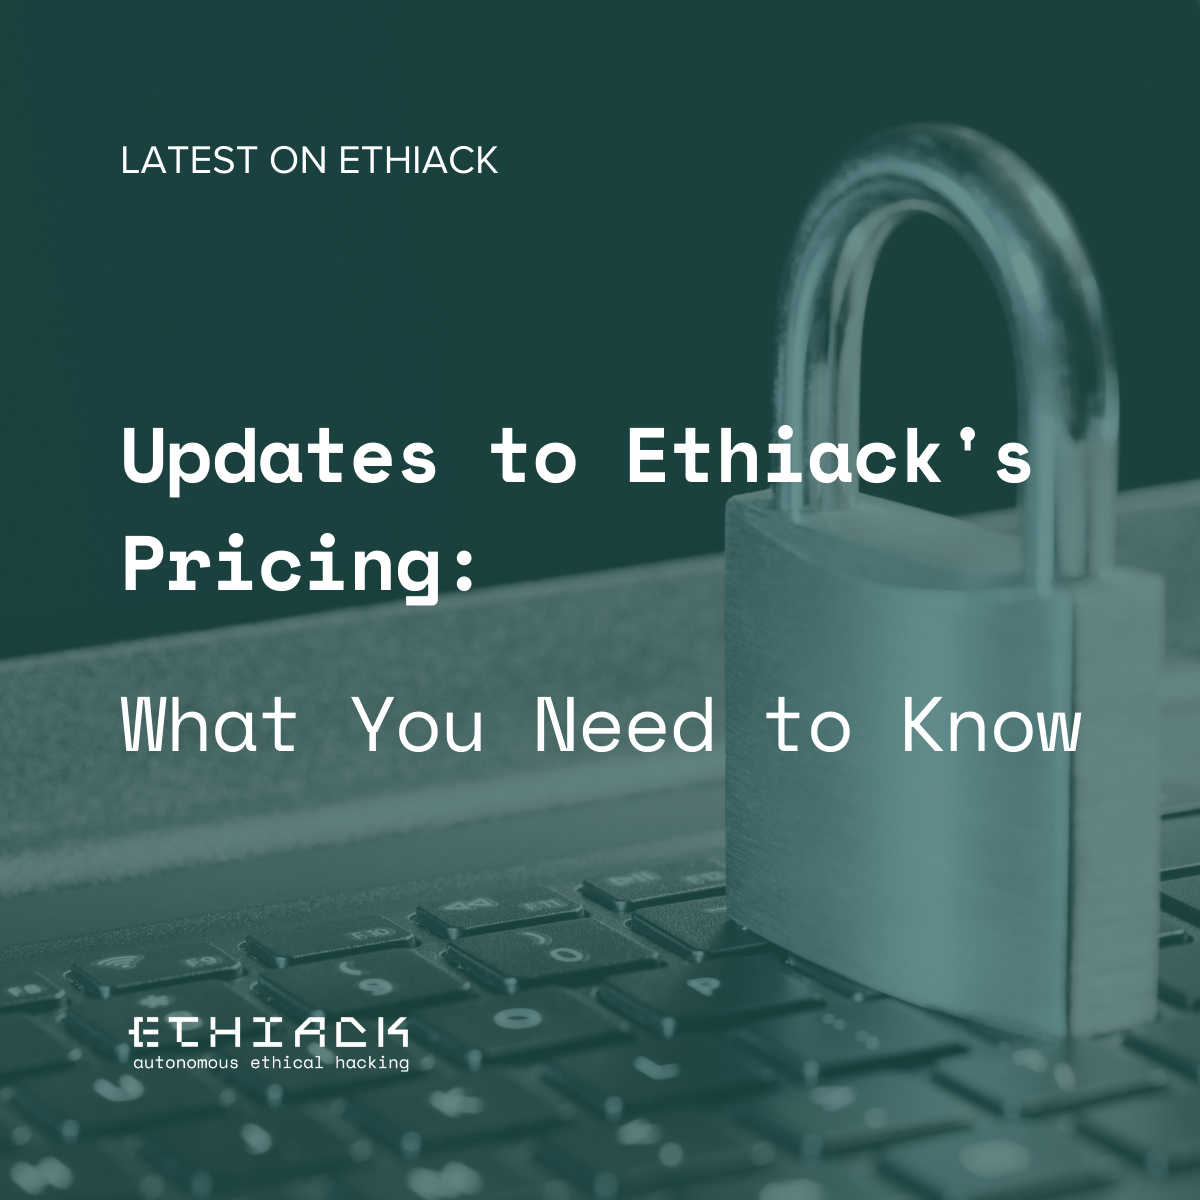 Ethiack-Pricing-Updates